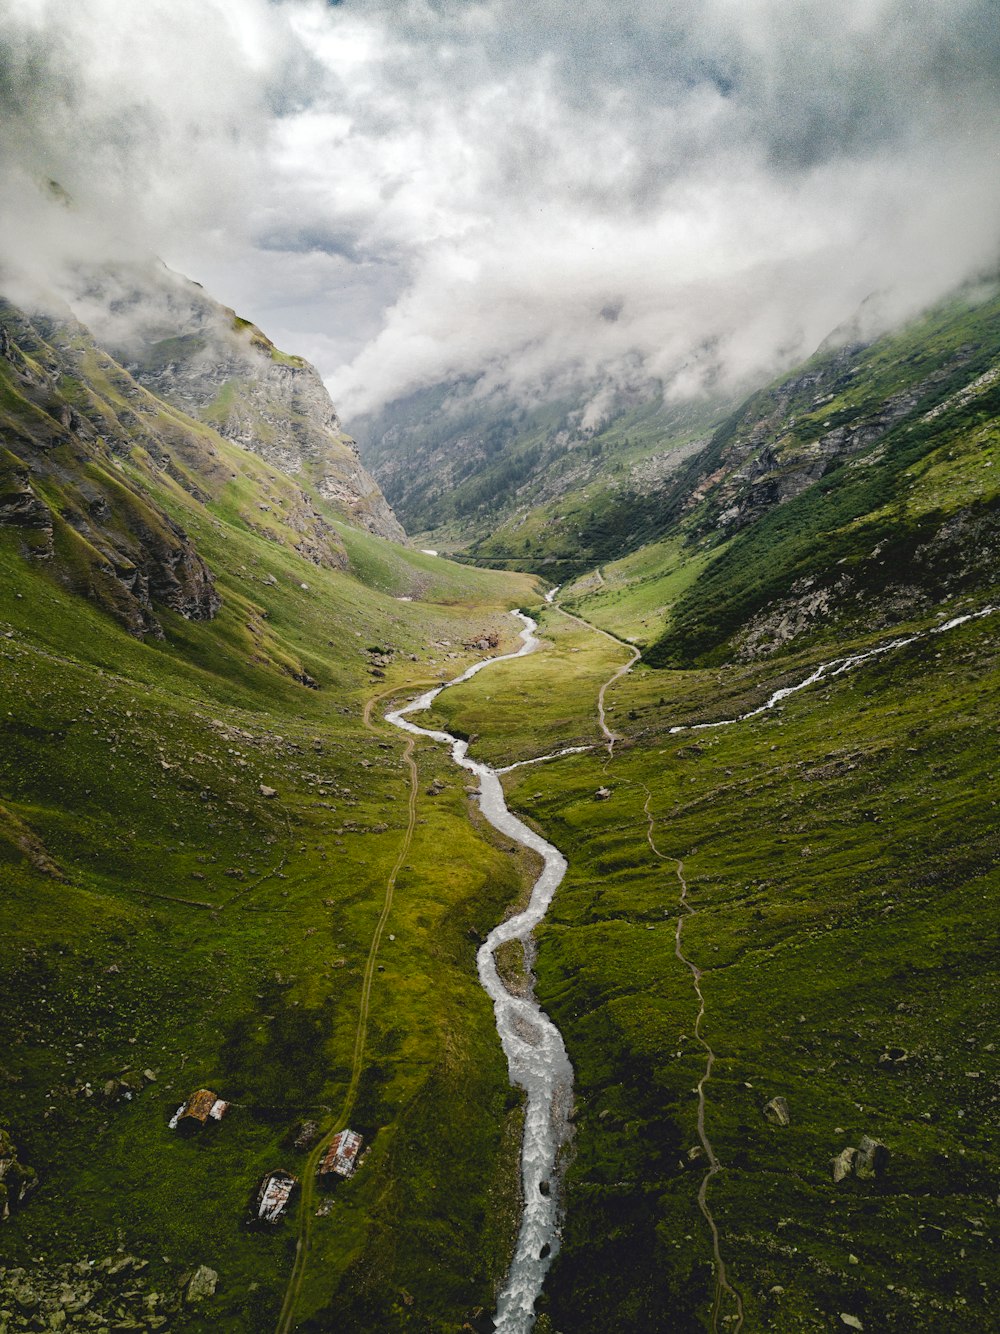 Photographie aérienne d’une rivière entre les montagnes